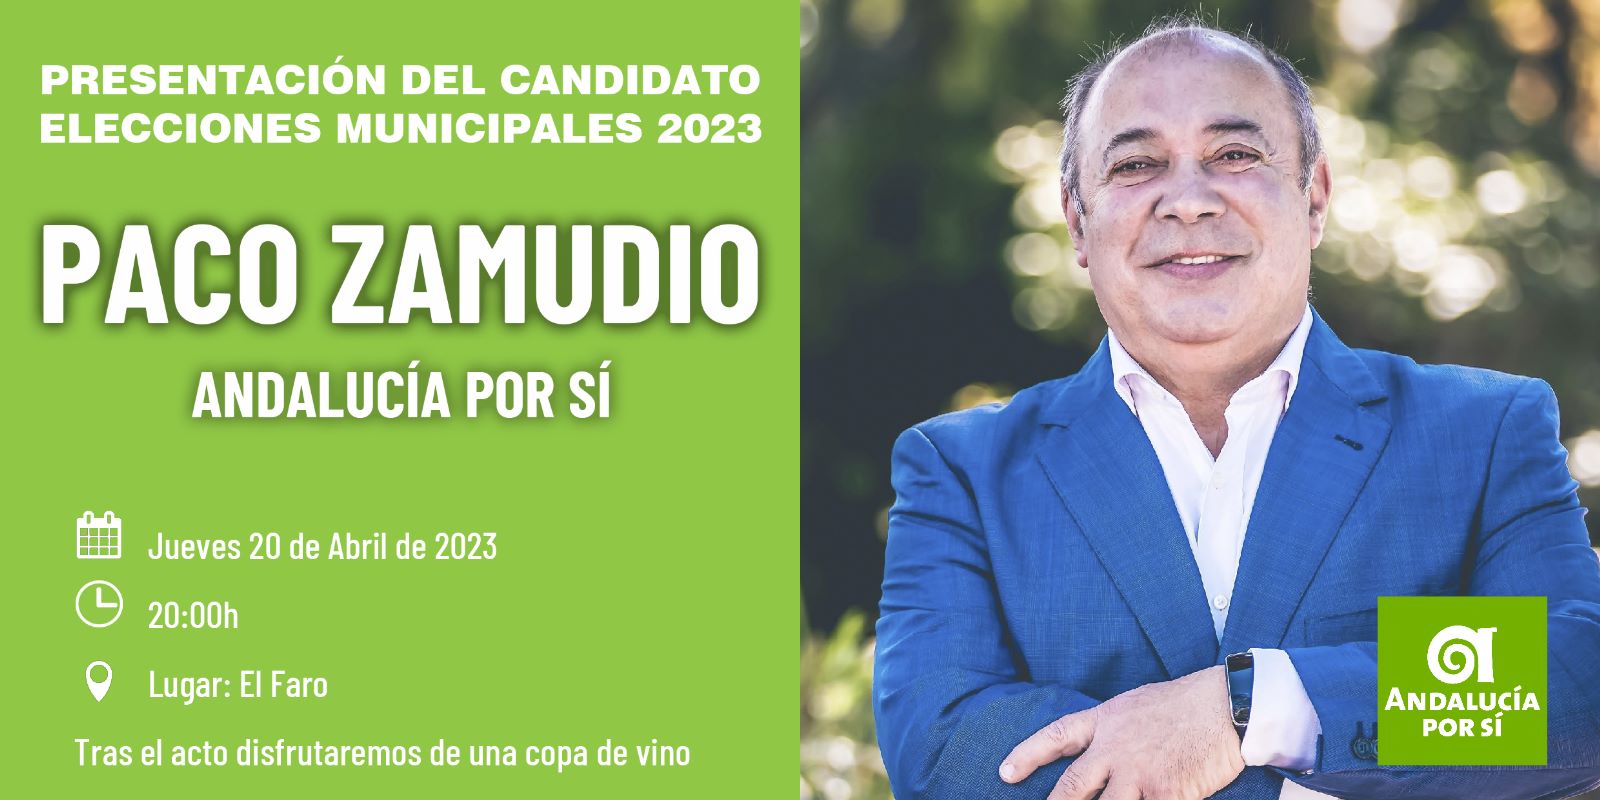 Presentación del Candidato de Andalucía Por Sí “Paco Zamudio”. Elecciones Municipales 2023